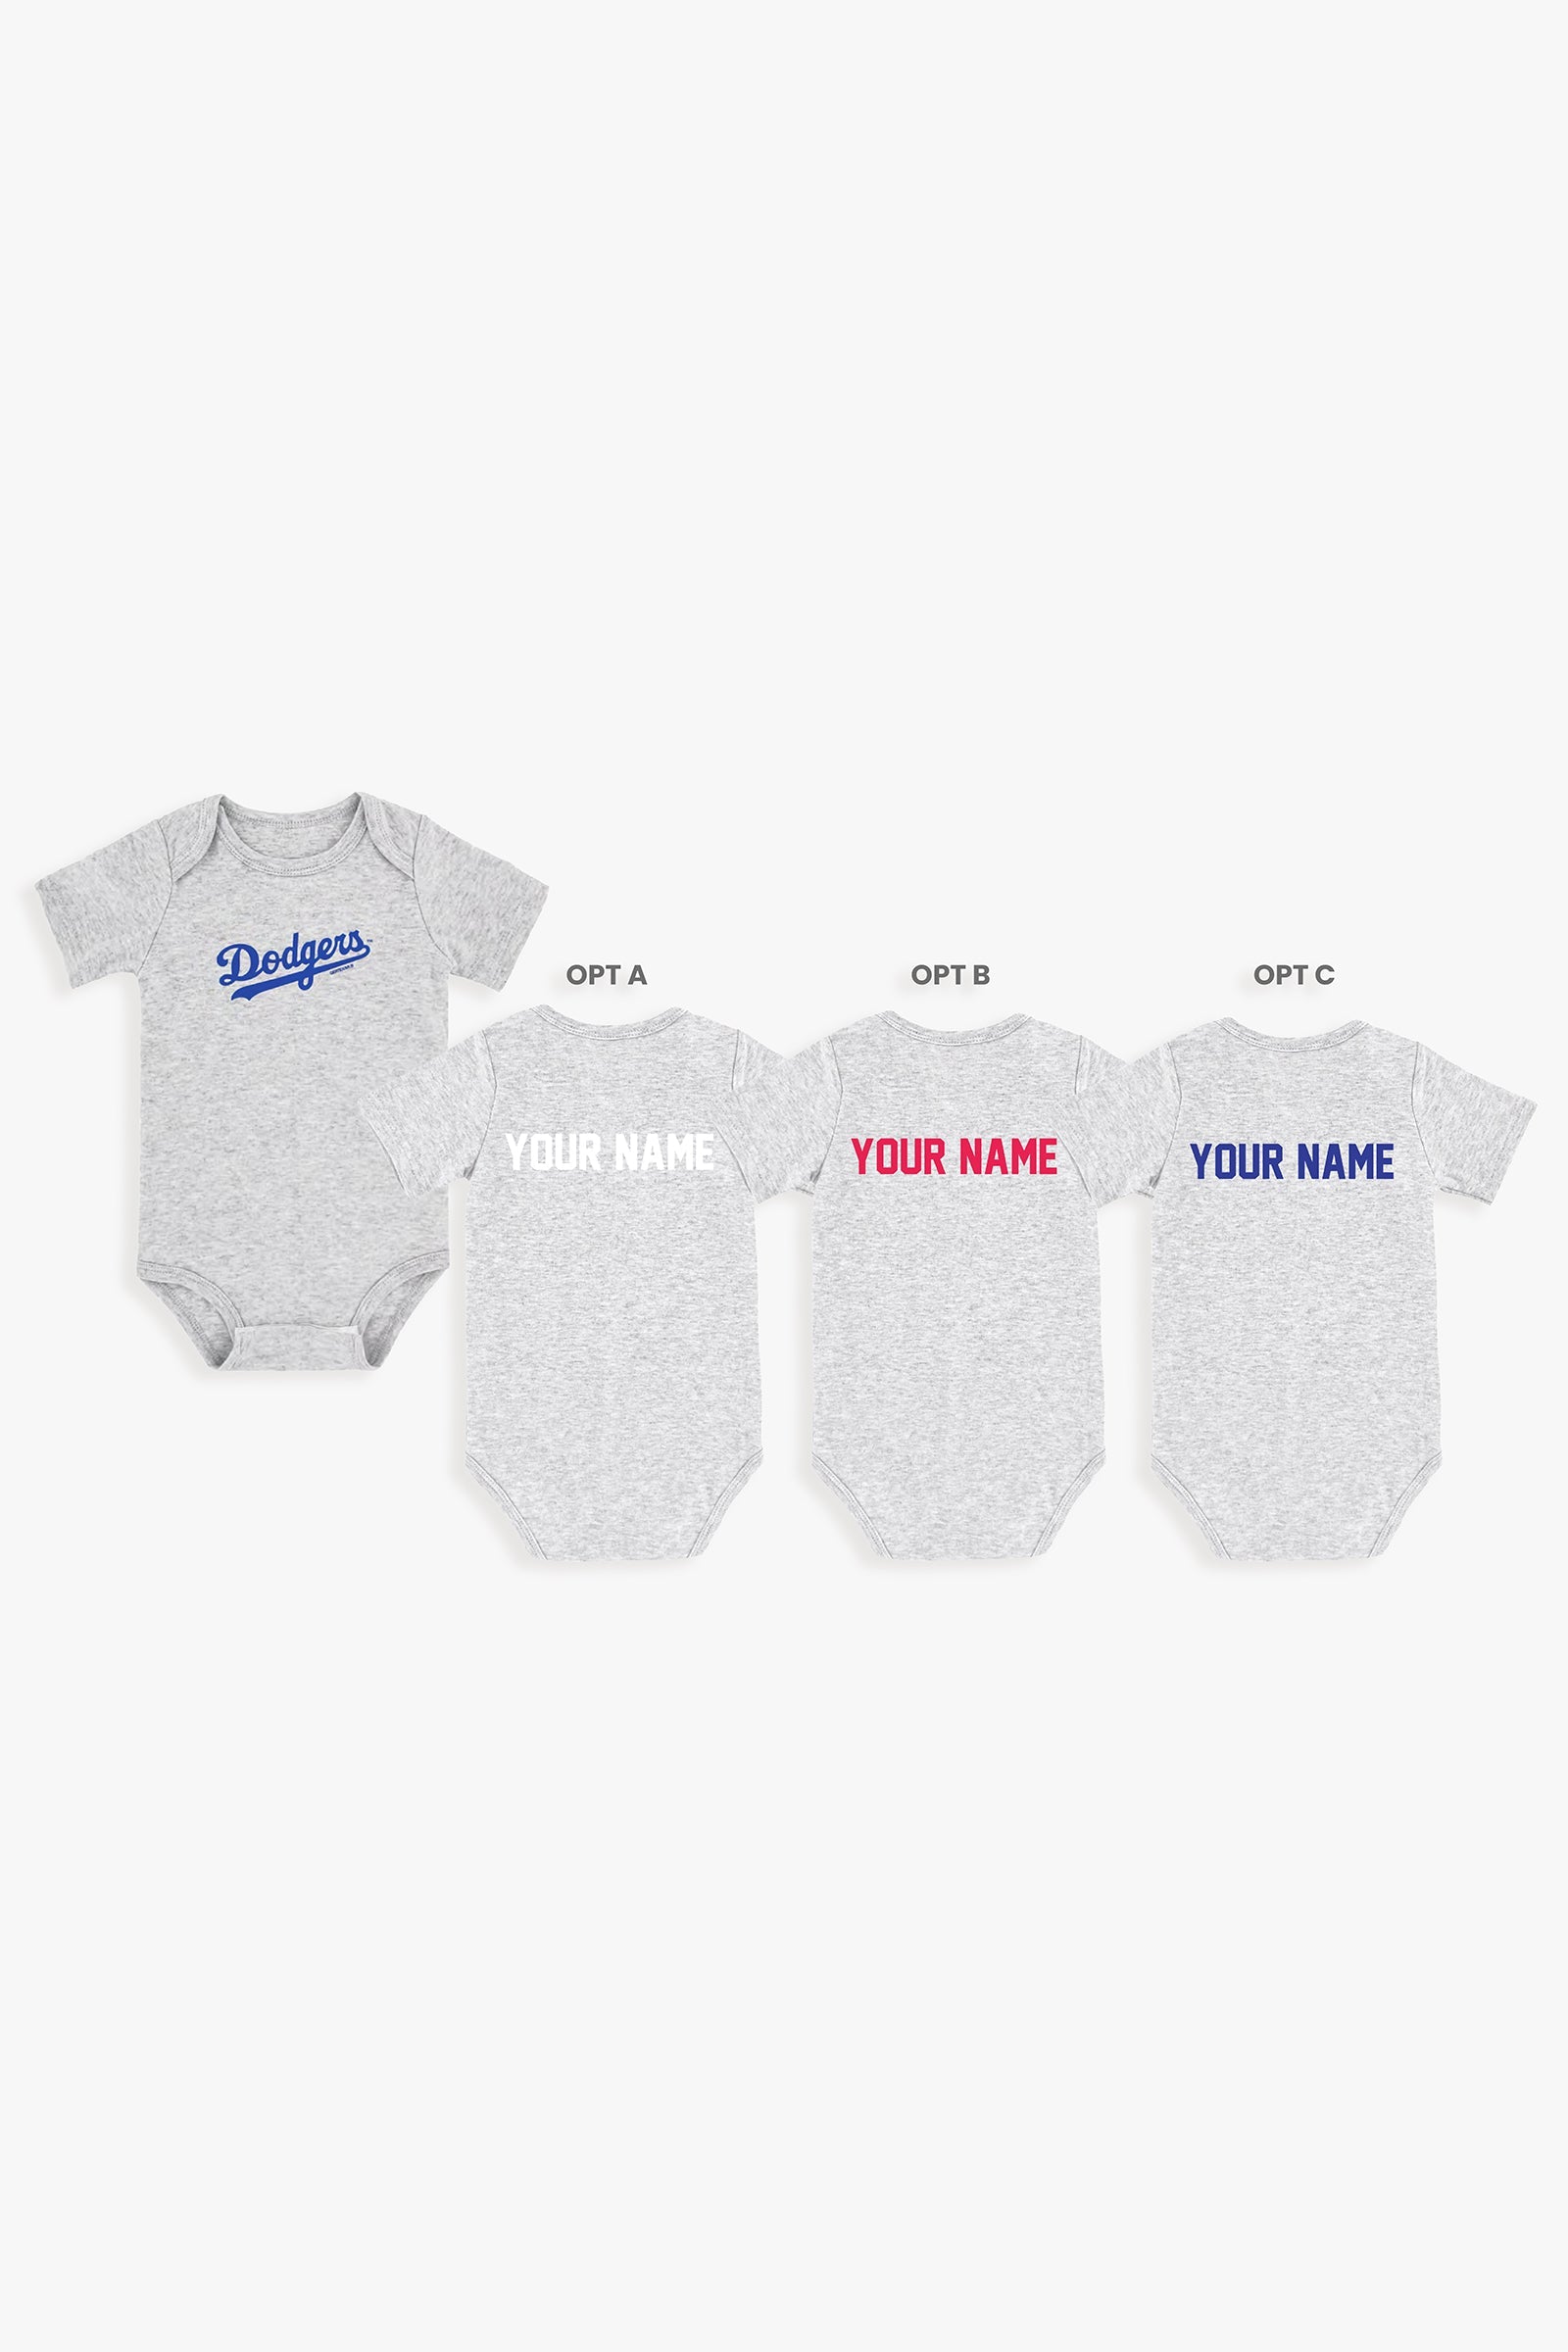 Customizable MLB Baby Onesie Bodysuit in Grey (3-6 Months)